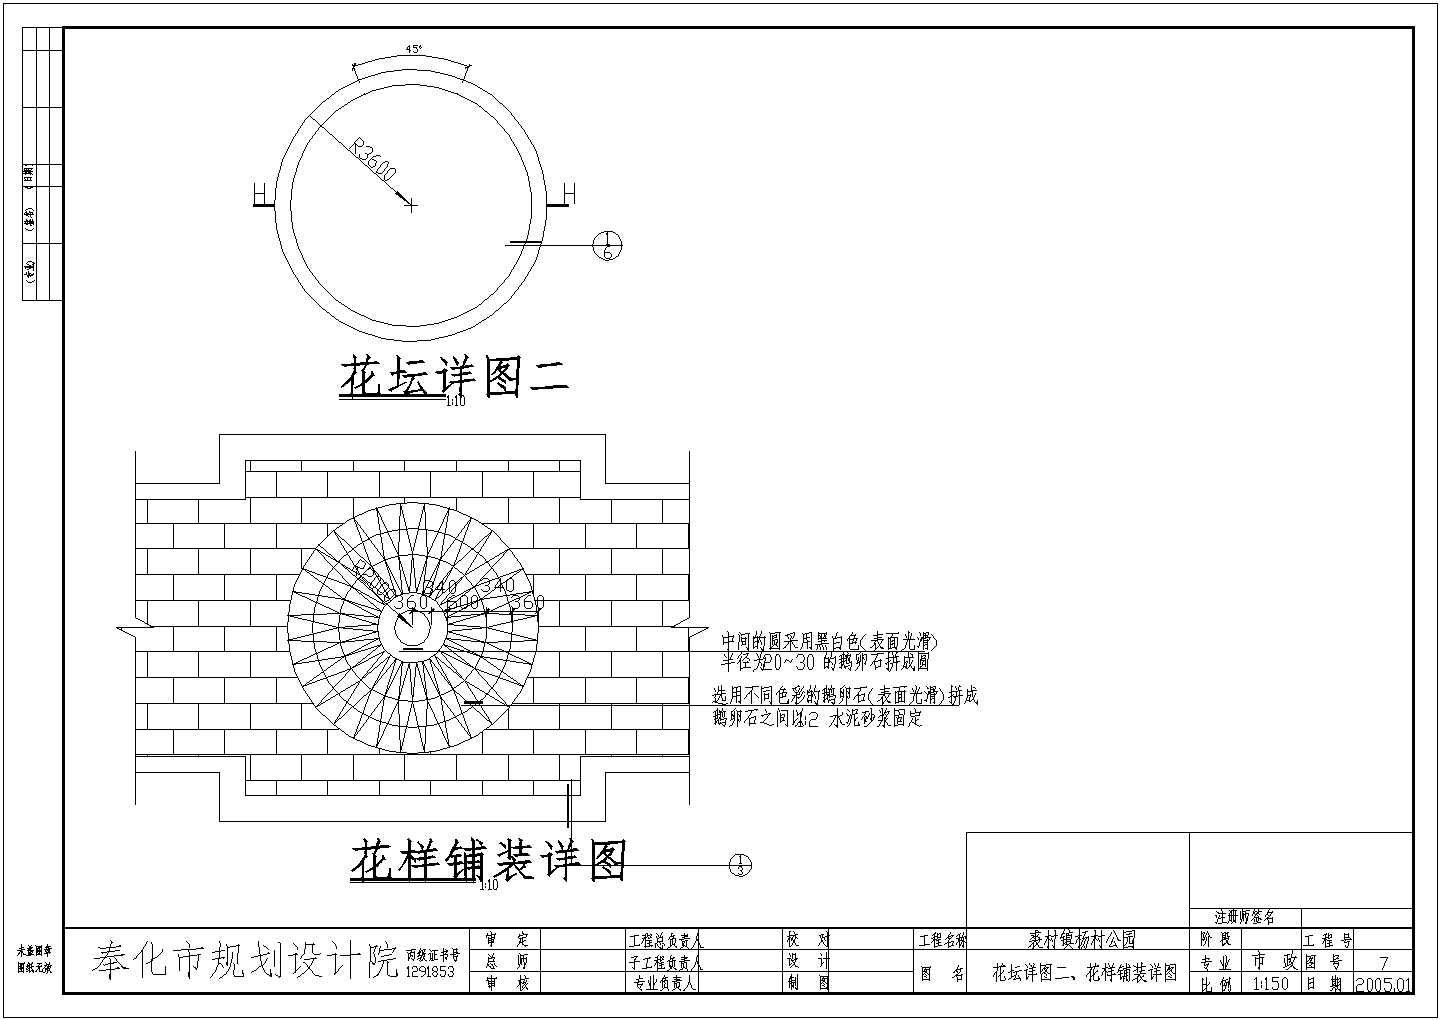 裘村镇杨村公园景观规划设计施工图